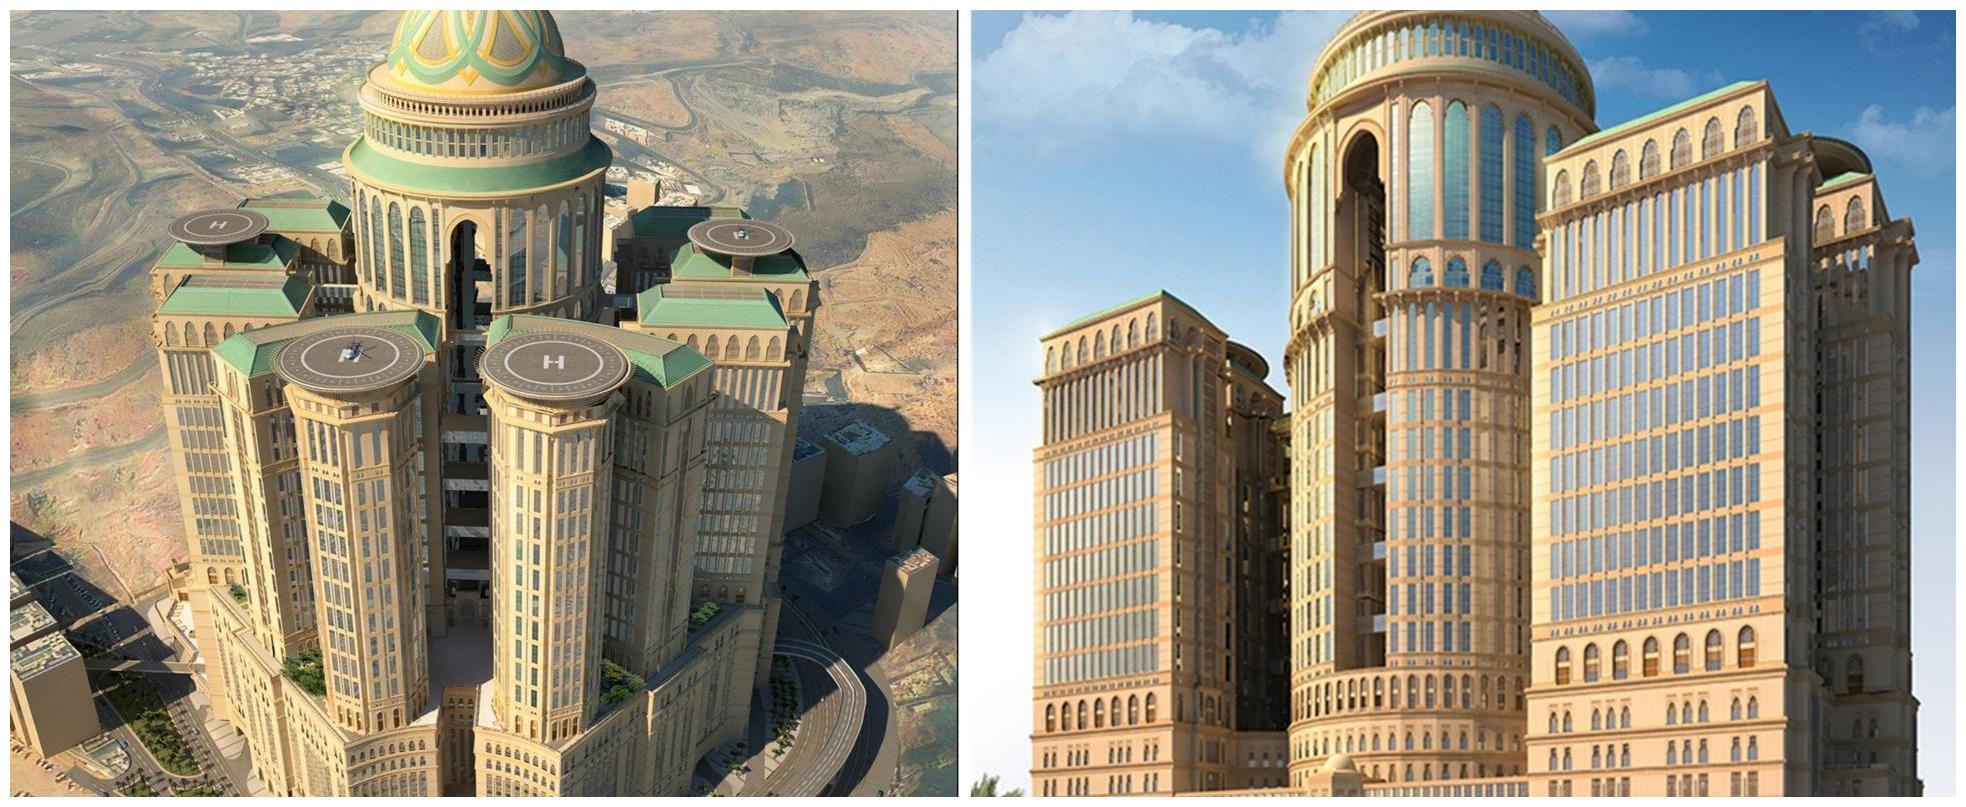 12座楼1万间房，想建成全球第一酒店，耗资247亿人民币烂尾多年